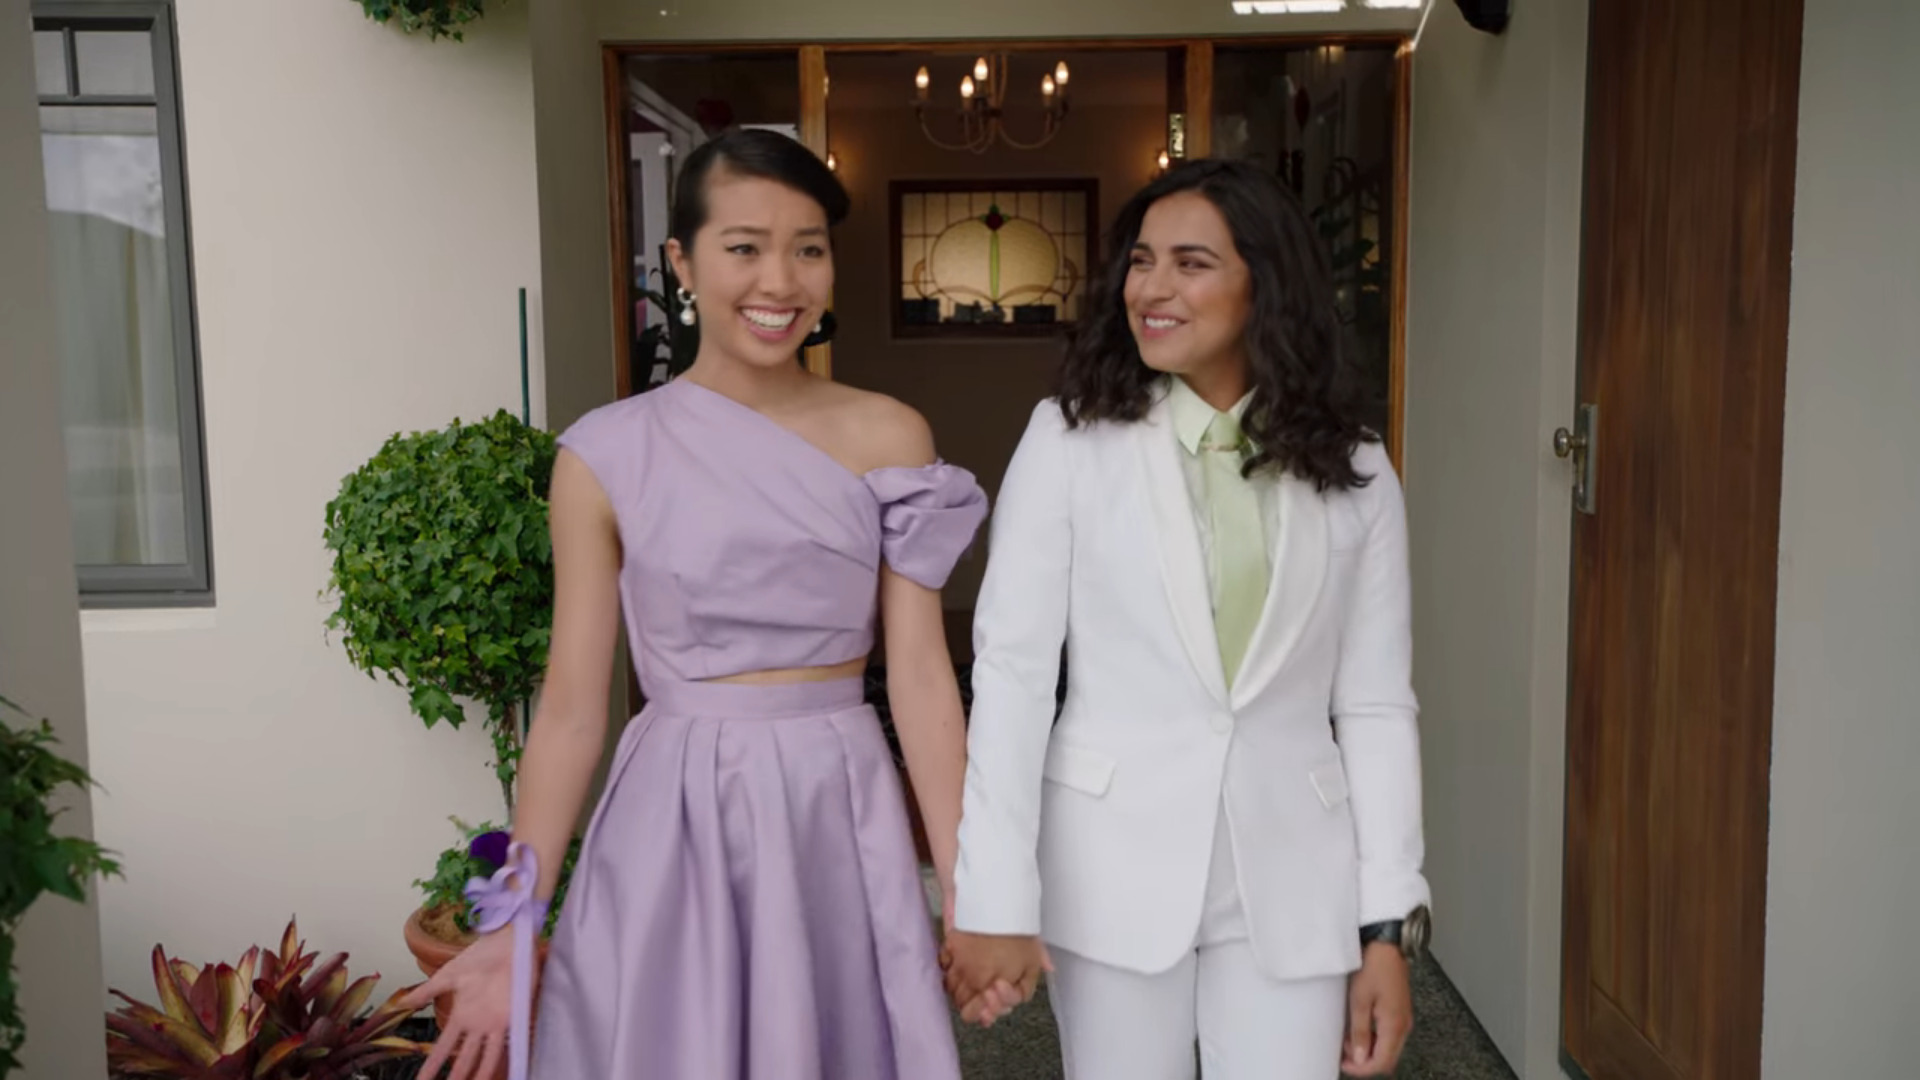 Izzy (Tessa Rao) e Fern (Jacqueline Joe) estão prontas para o baile de formatura em Power Rangers Dino Fury Temporada 2 Episódio 5 “Stitched Up” (2022), Netflix.